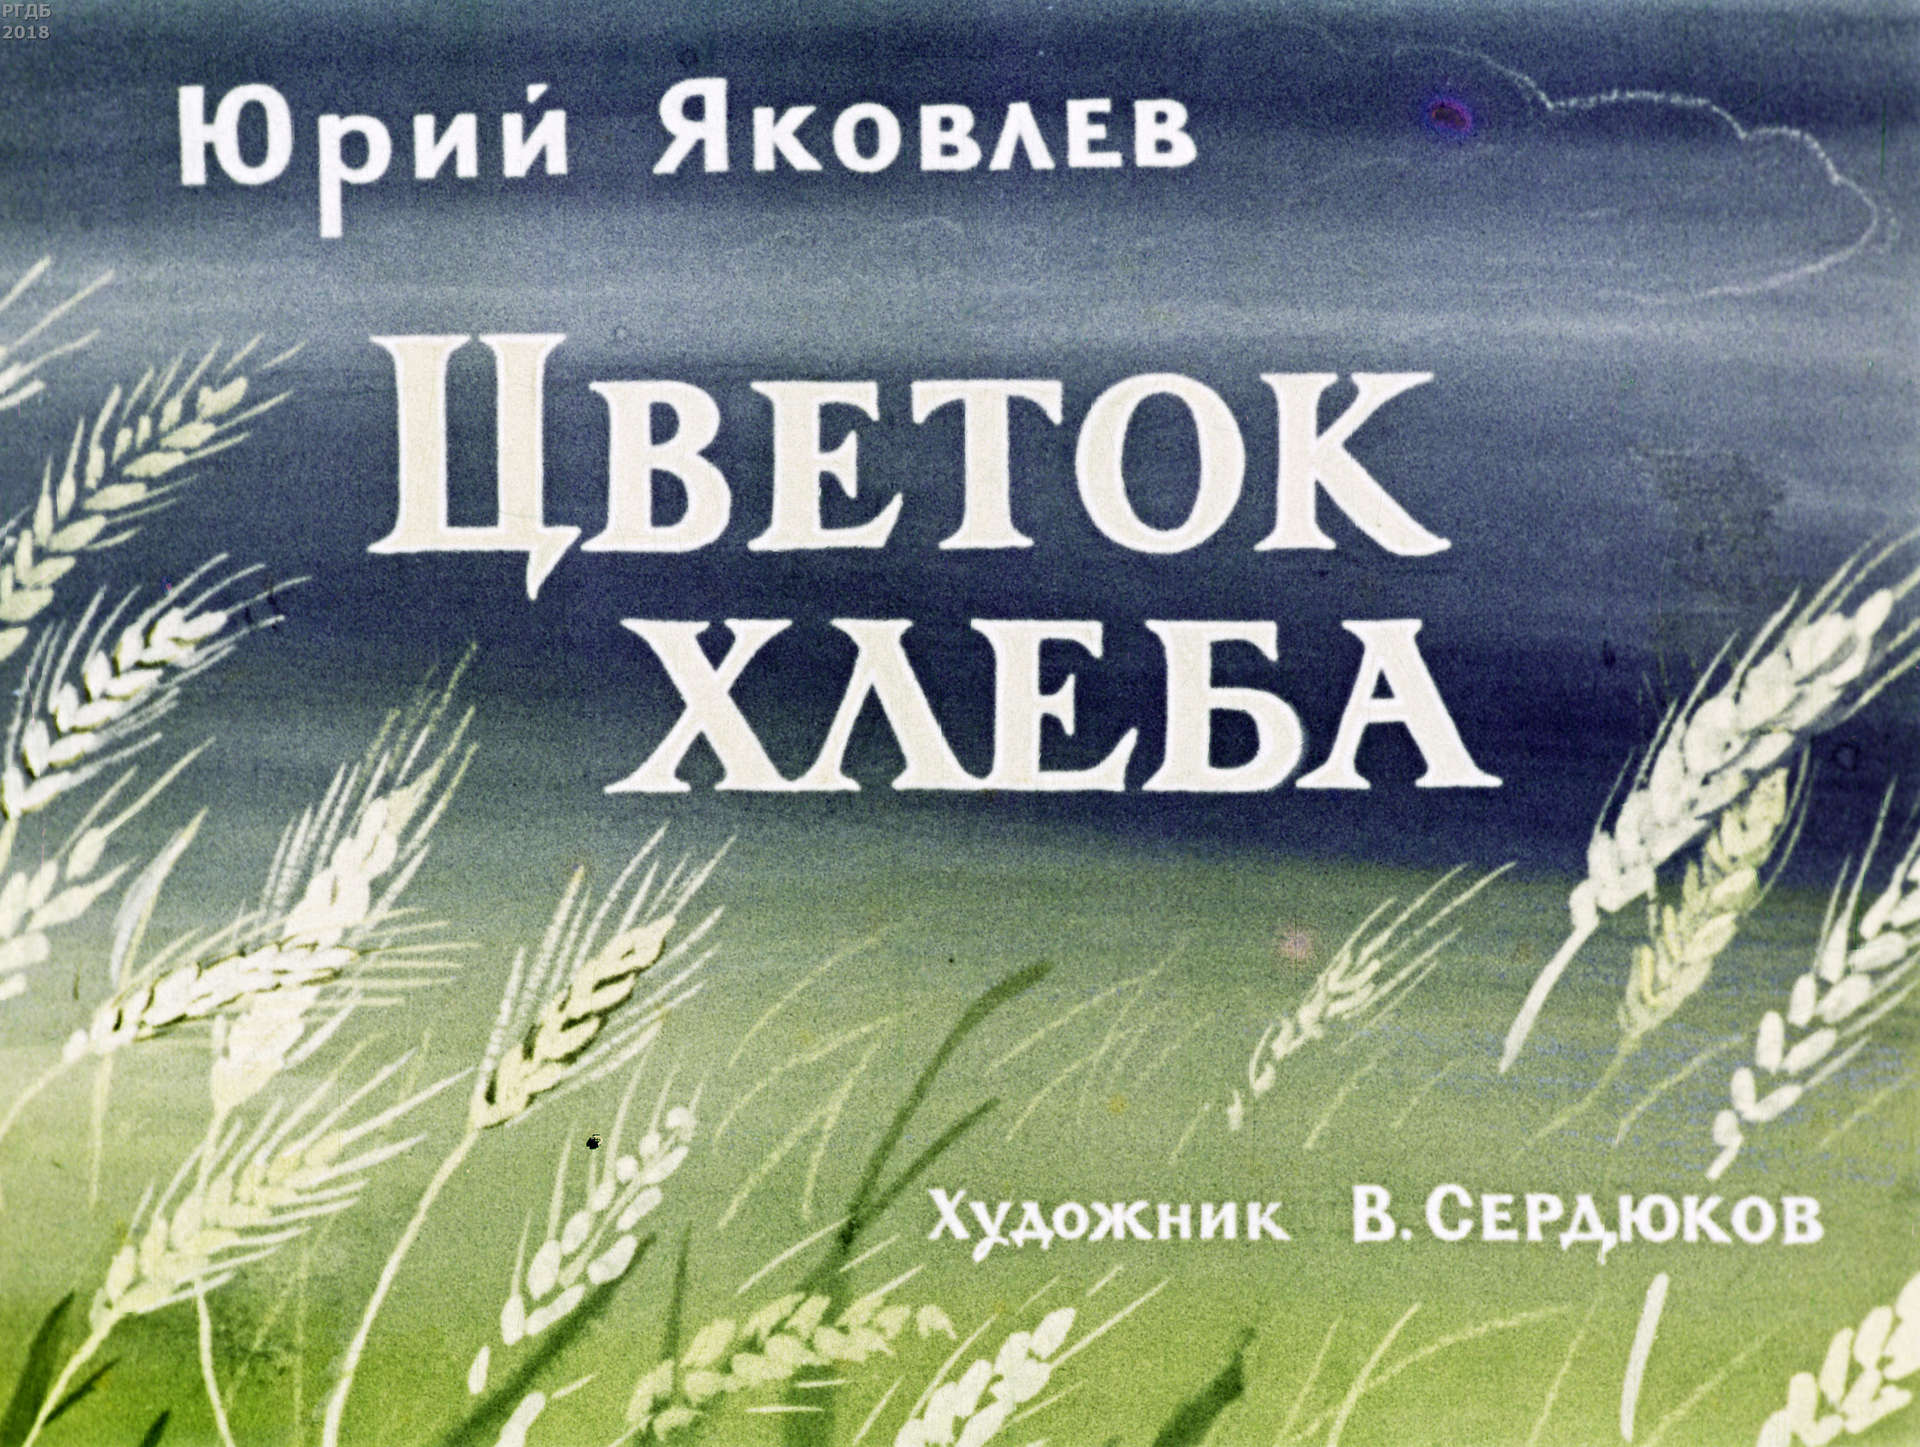 Яковлев Юрий Яковлевич - Цветок хлеба - 1971